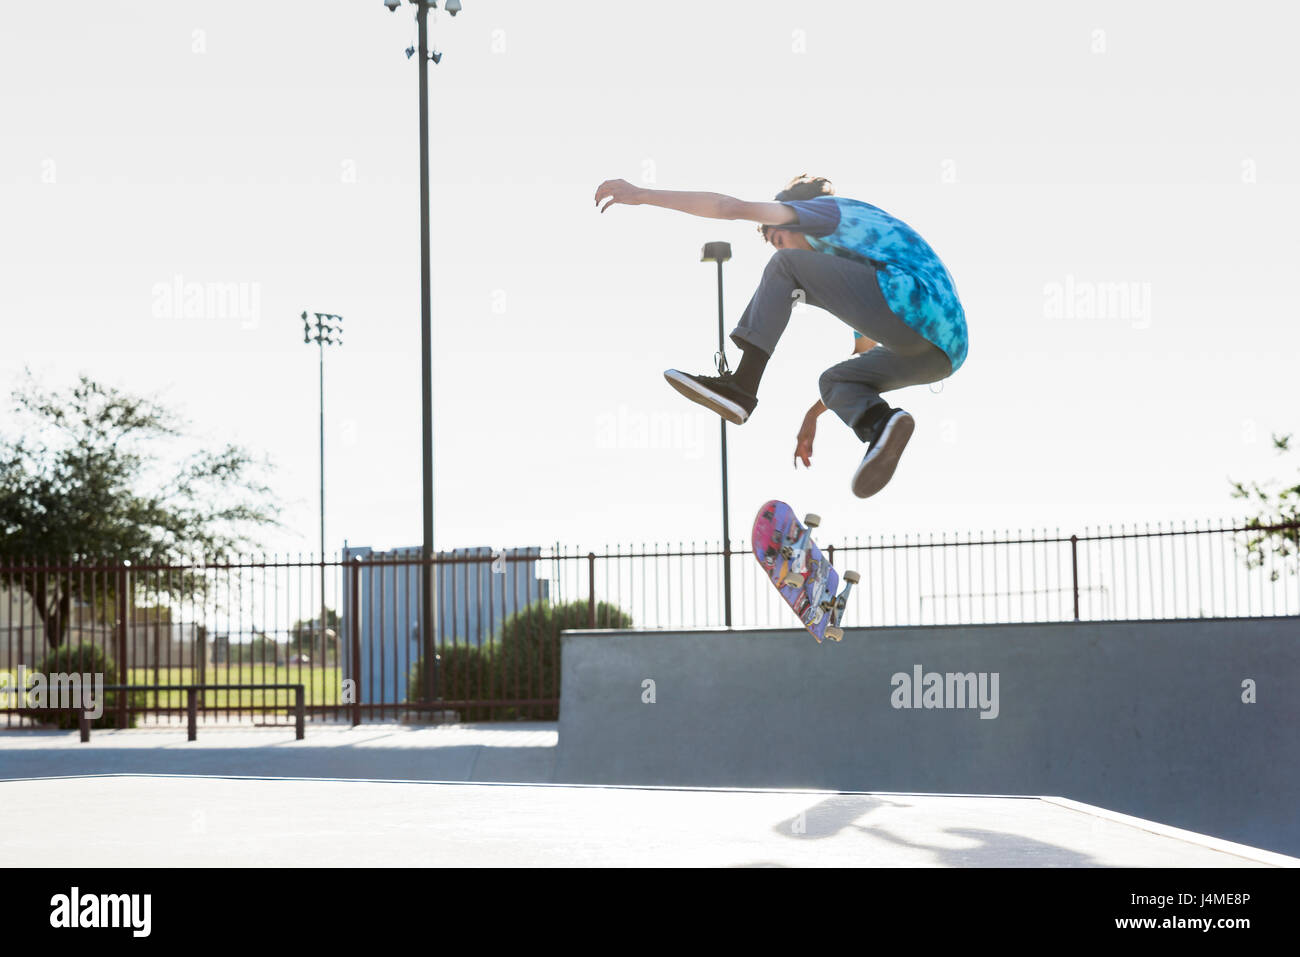 Hispanic Mann Durchführung der Luft Trick auf skateboard Stockfoto